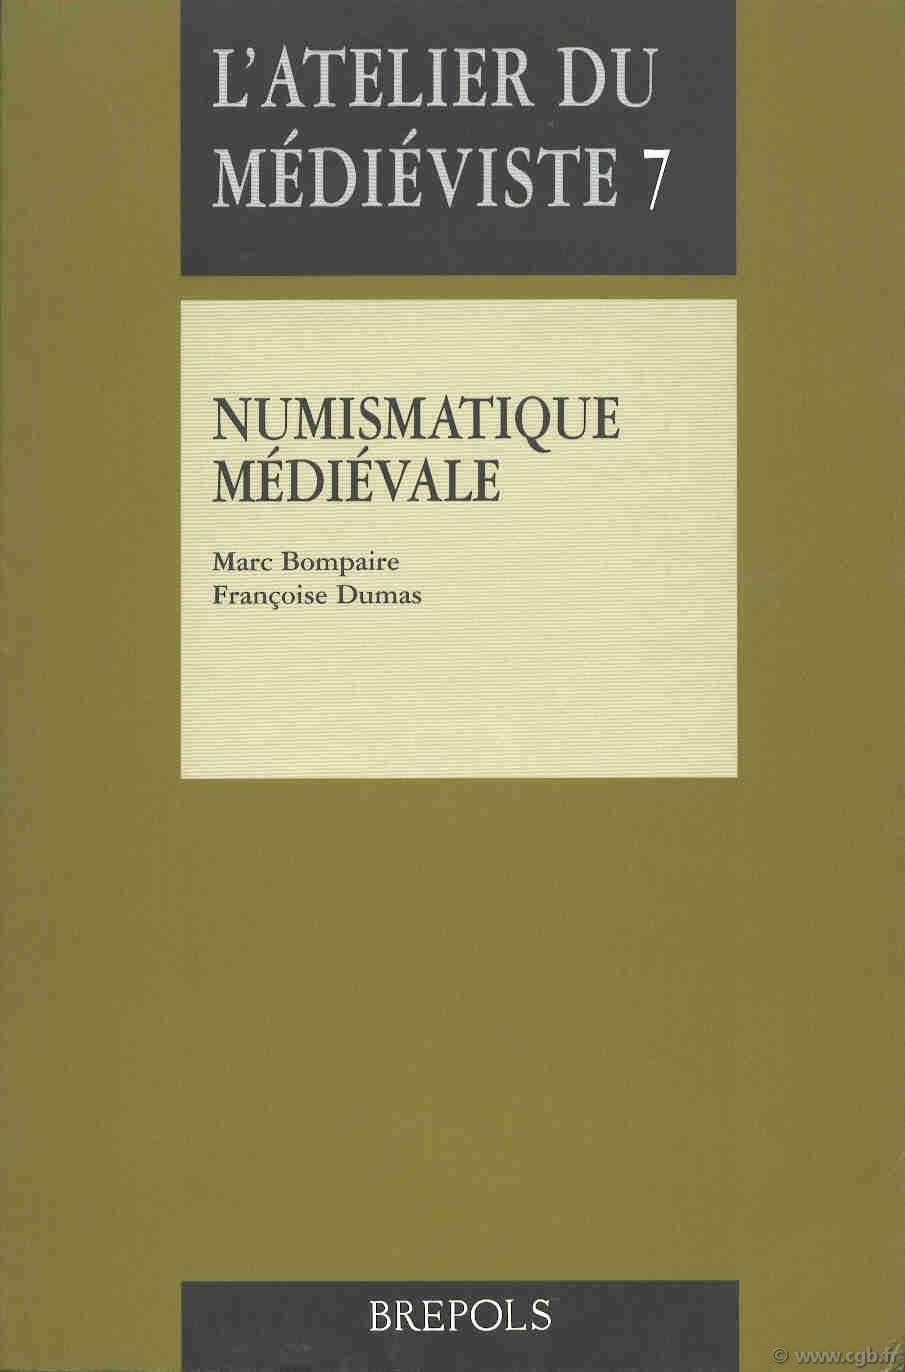 Numismatique médiévale, l atelier du médiéviste 7 BOMPAIRE Marc, DUMAS Françoise